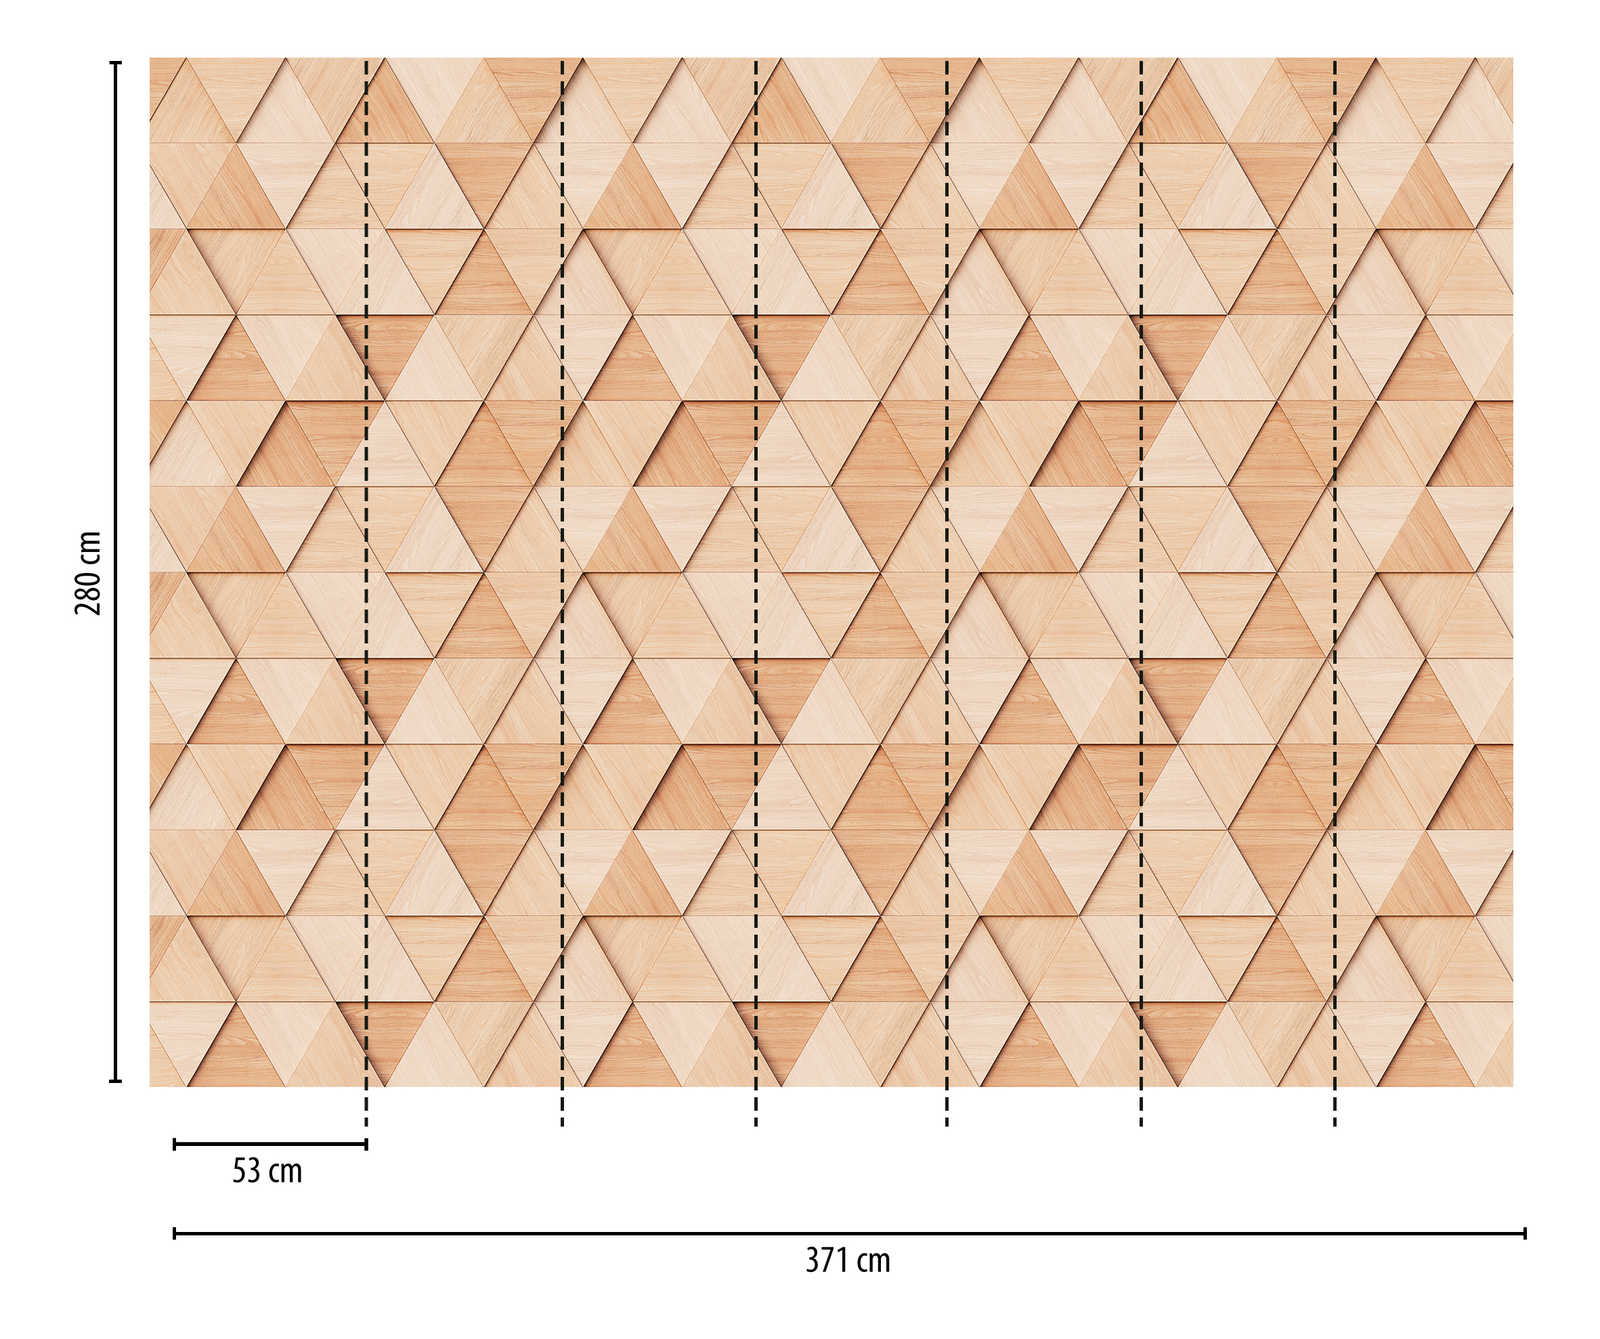             Nouveauté papier peint - papier peint à motifs imitation bois Design avec motif triangulaire 3D
        